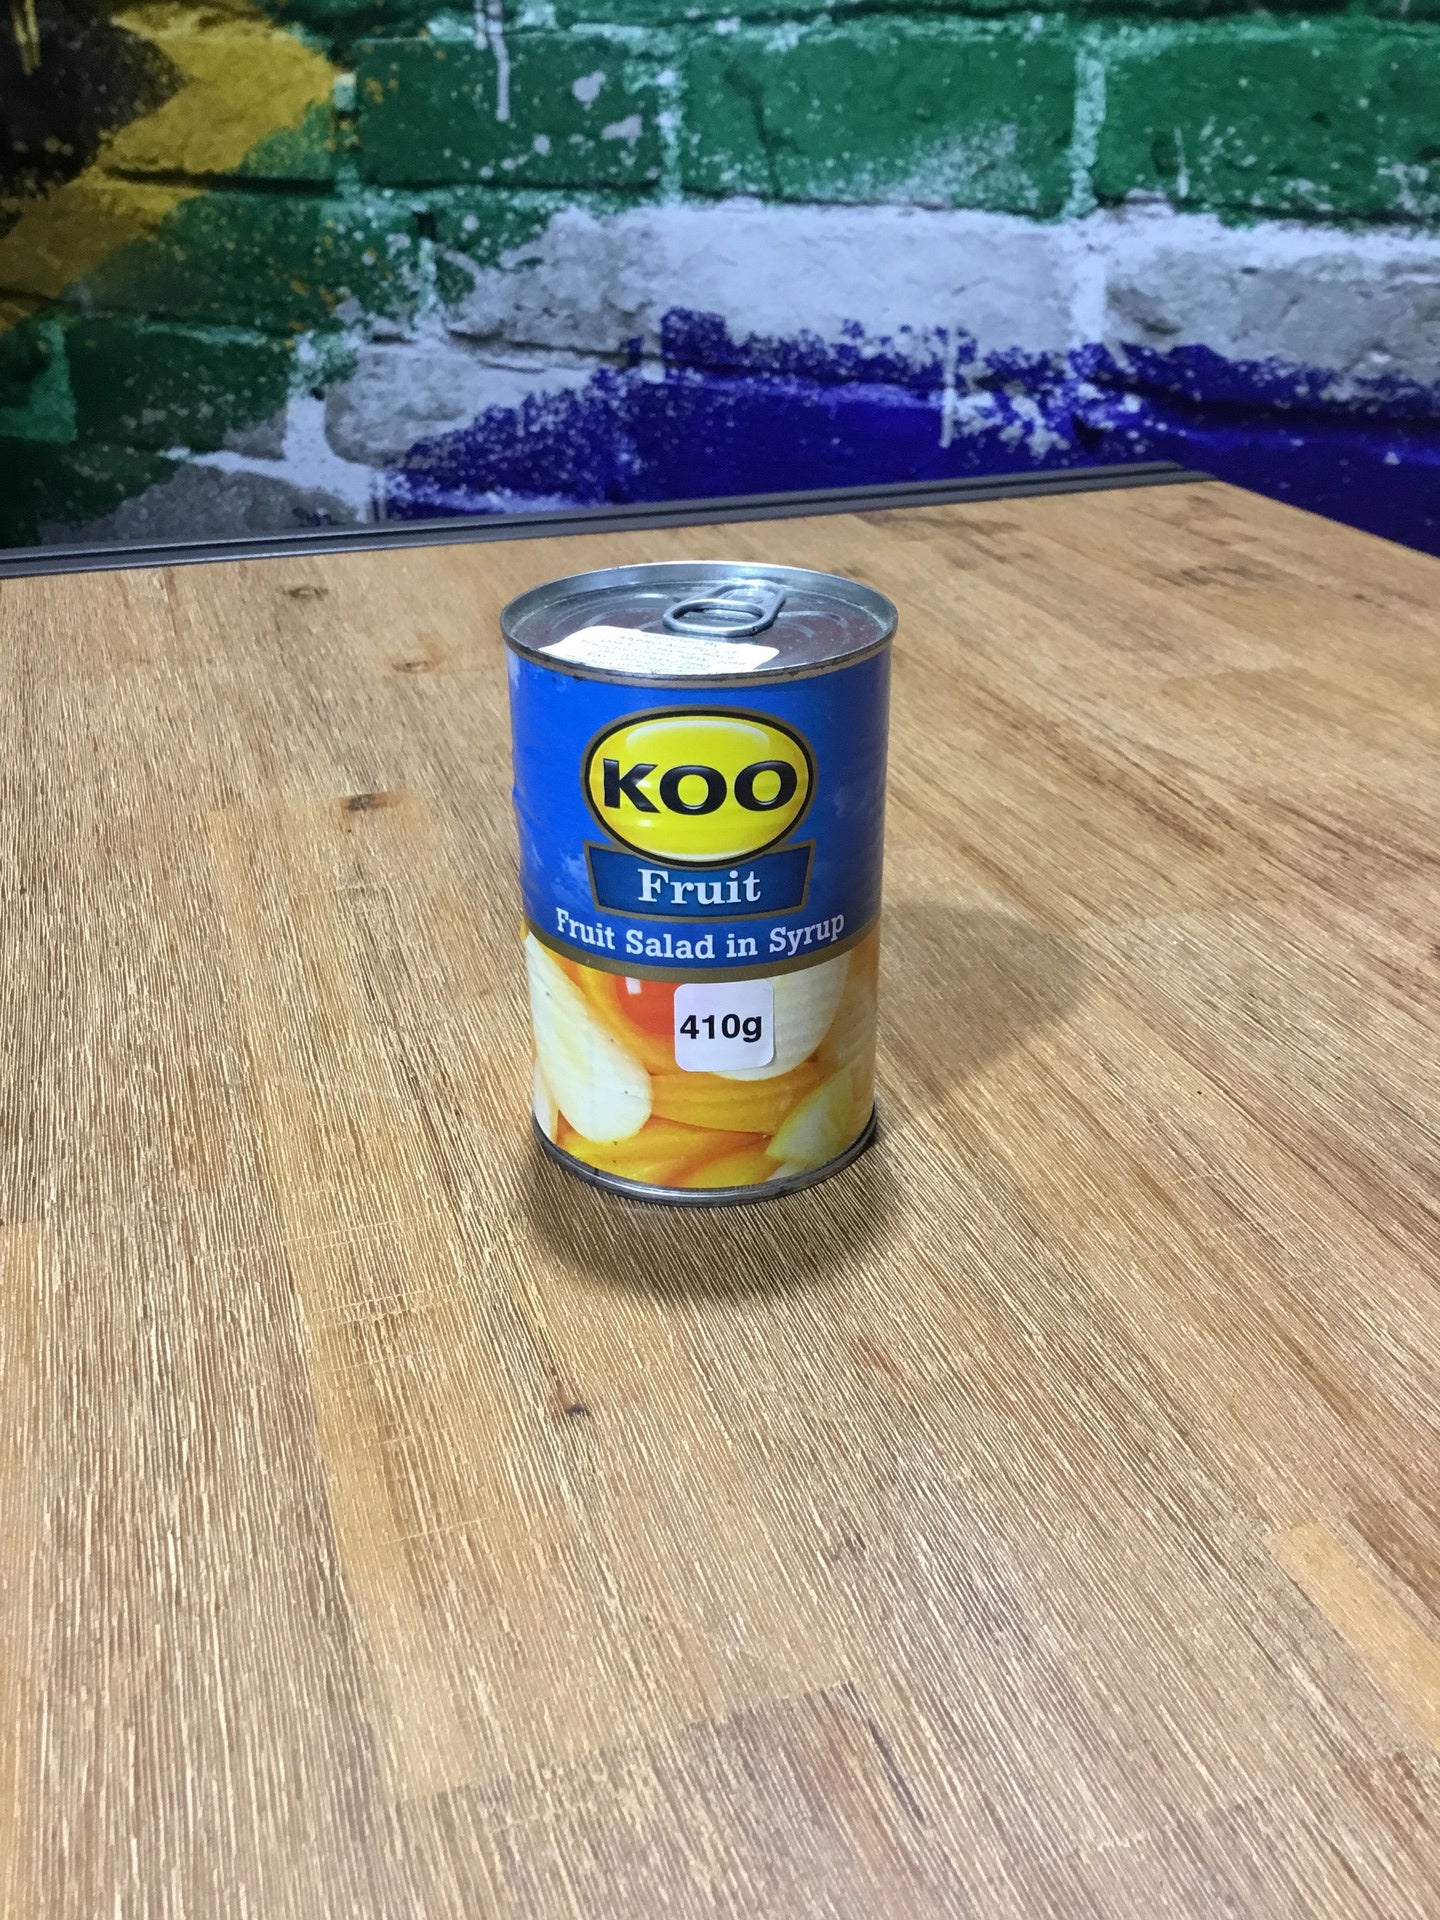 Koo Fruit Salad in syrup 410g